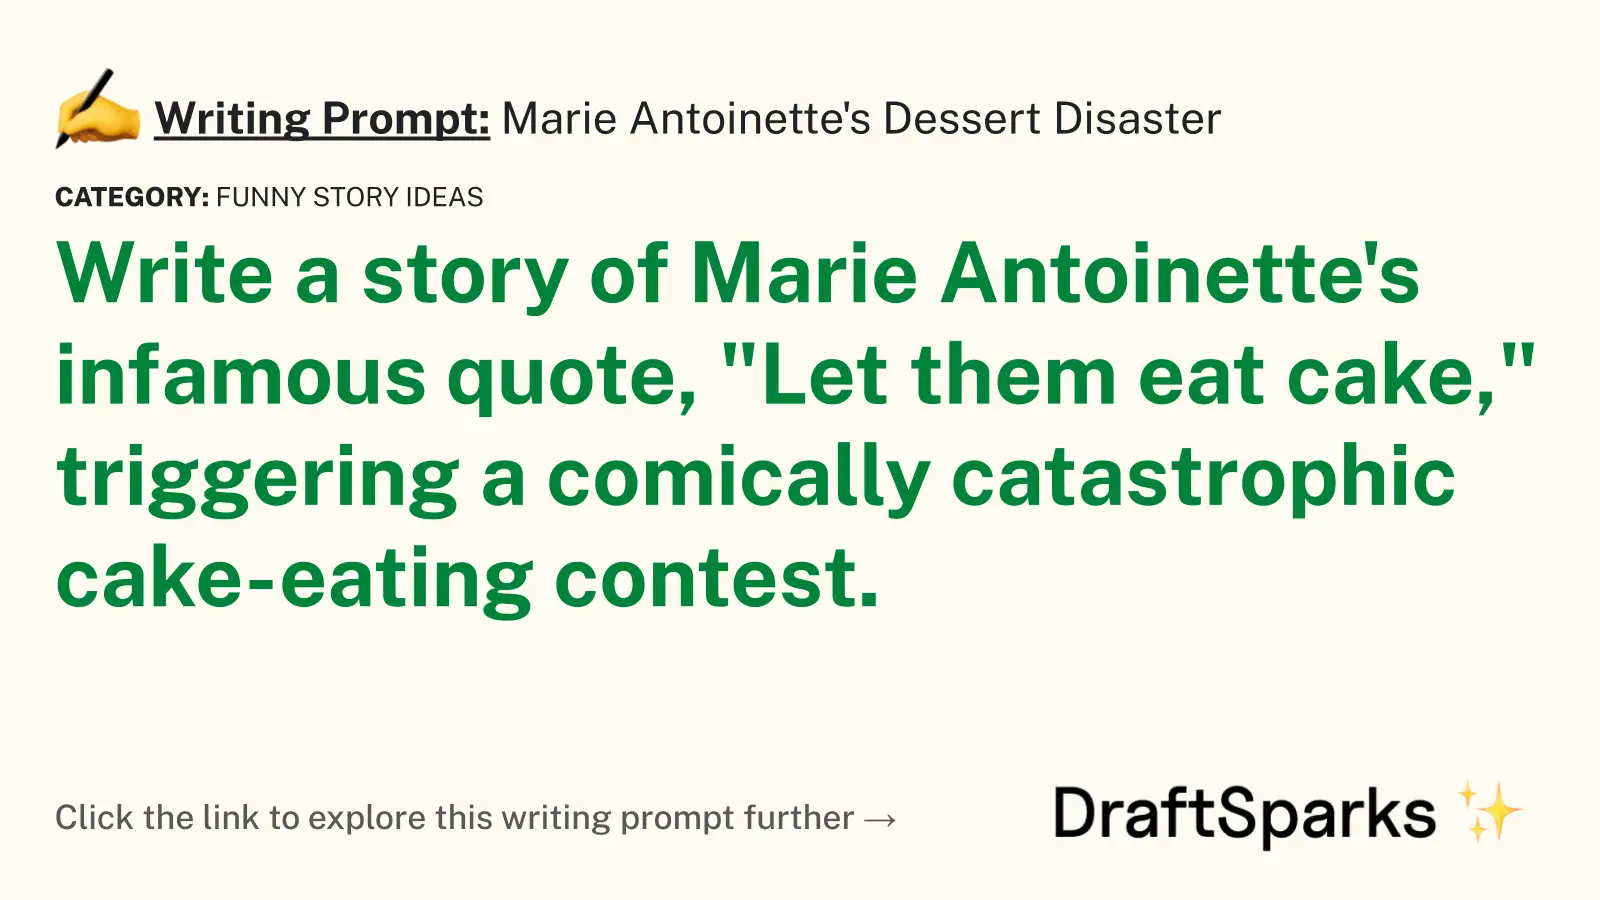 Marie Antoinette’s Dessert Disaster